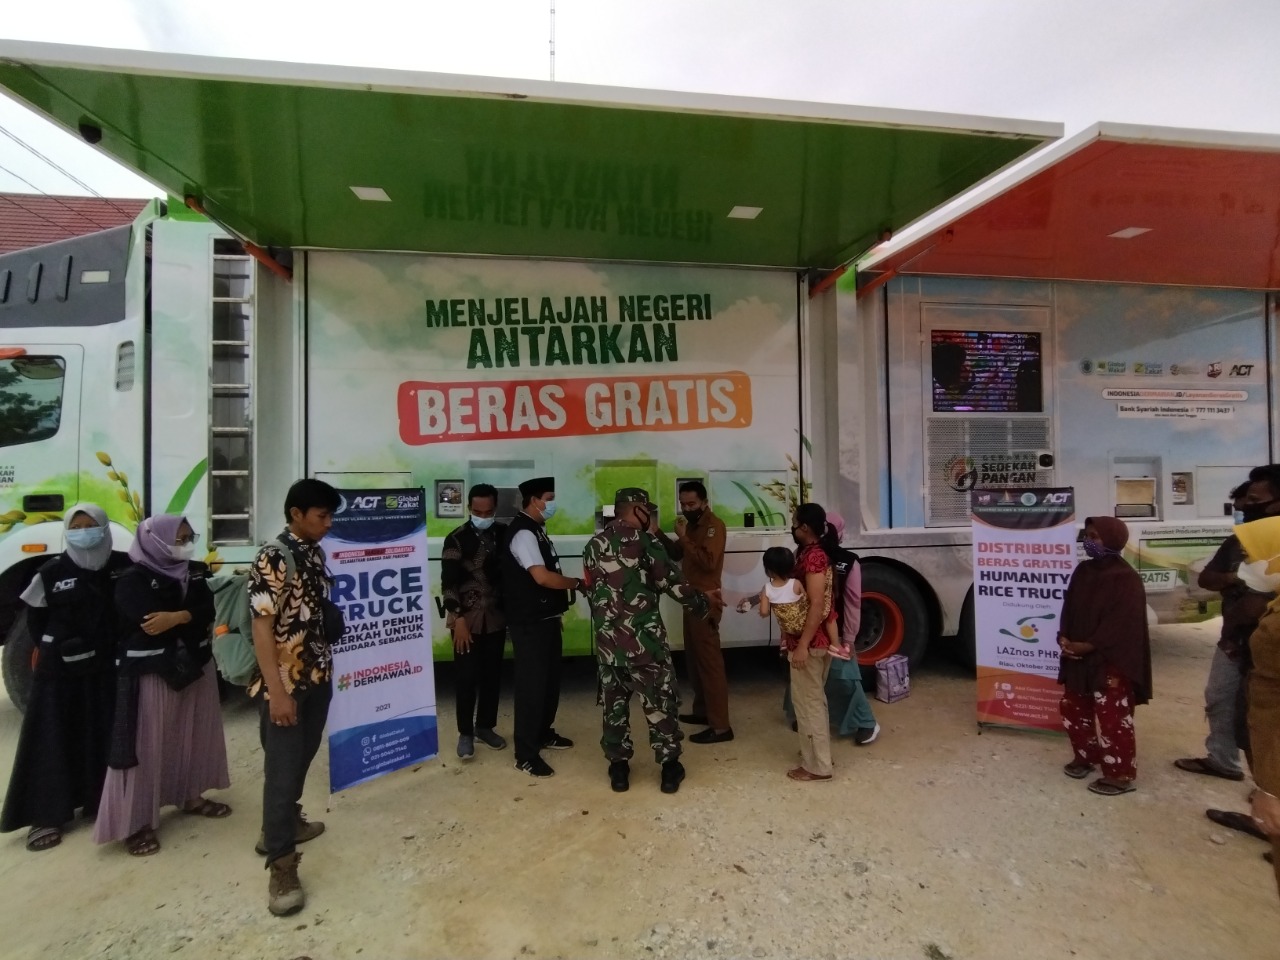 Luar Biasa!!!! Humanity Rice Truck ACT Salurkan 3 Ton Beras Gratis